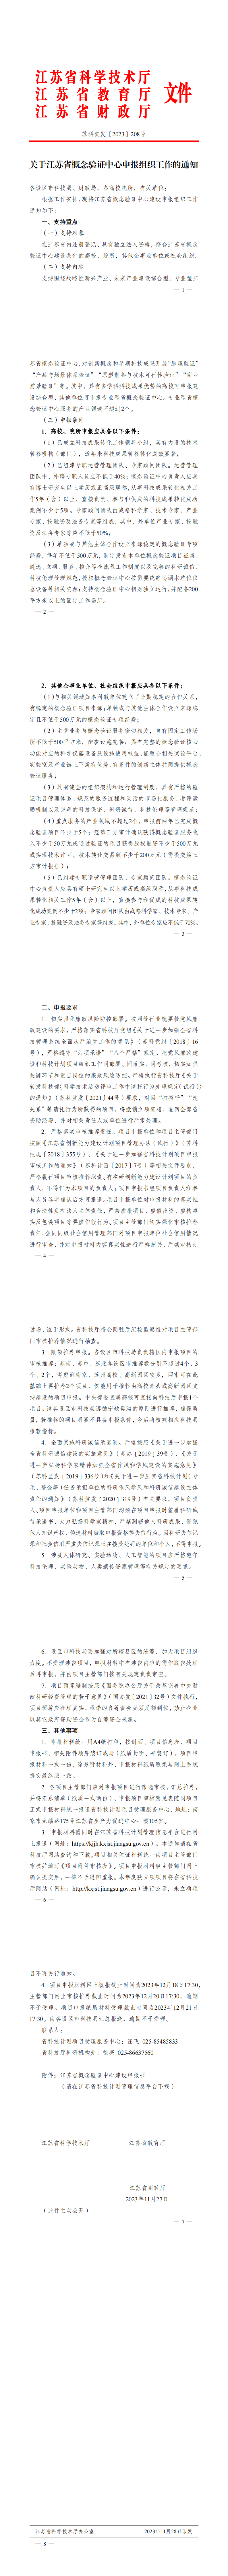 关于江苏省概念验证中心申报组织工作的通知_00.png